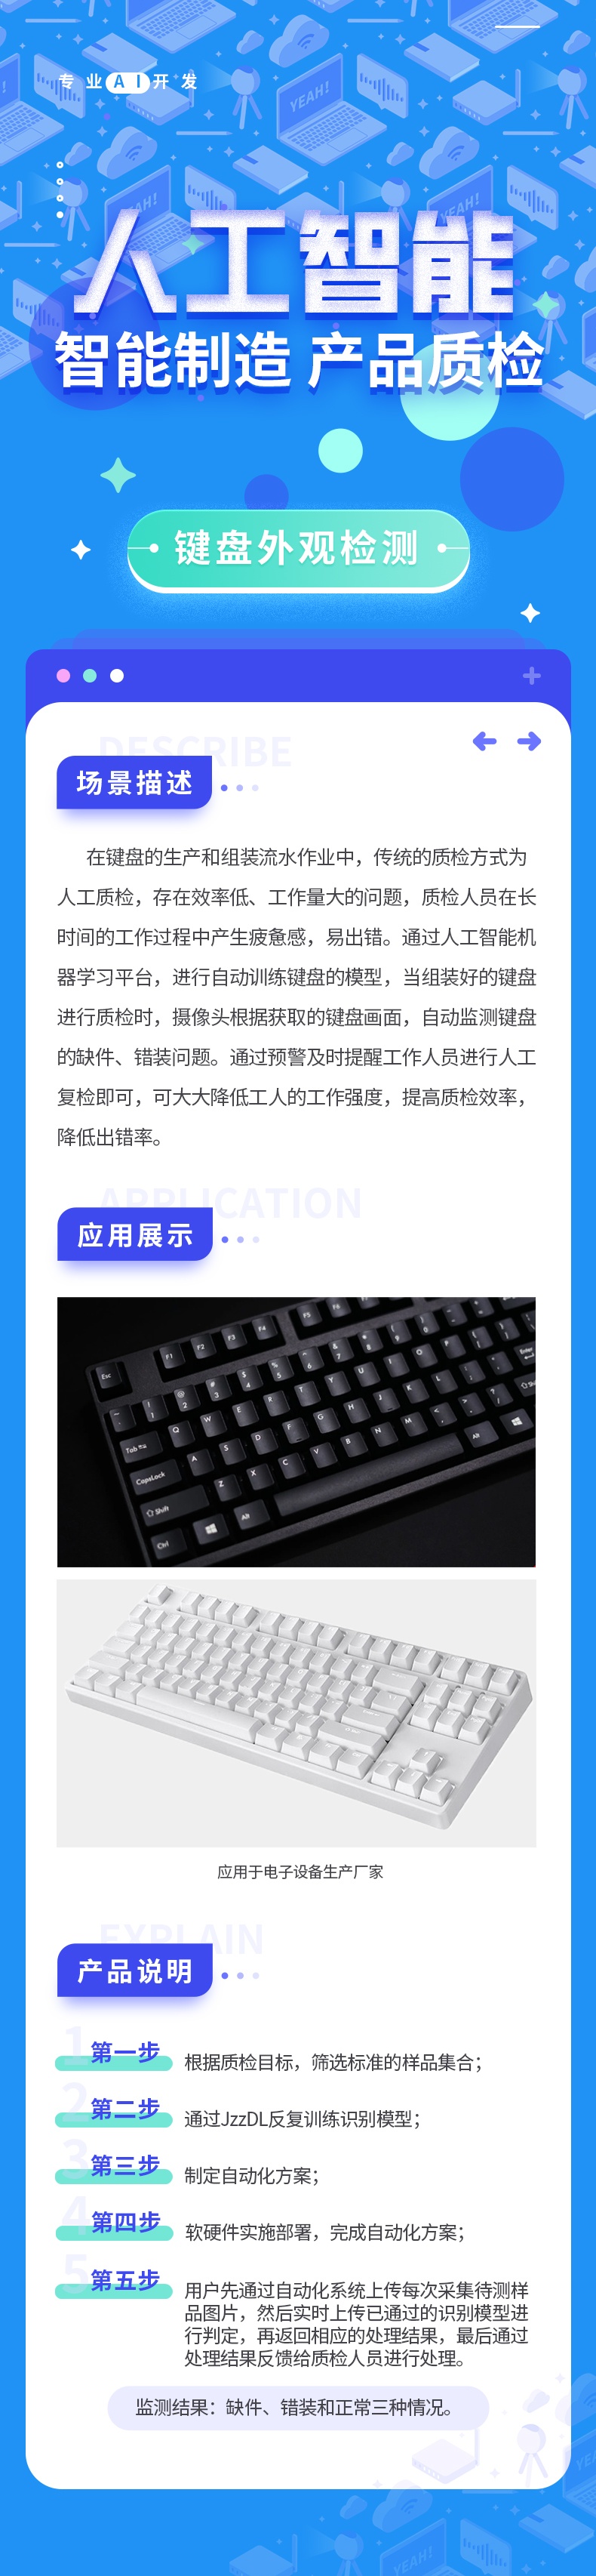 键盘外观检测1_看图王.jpg